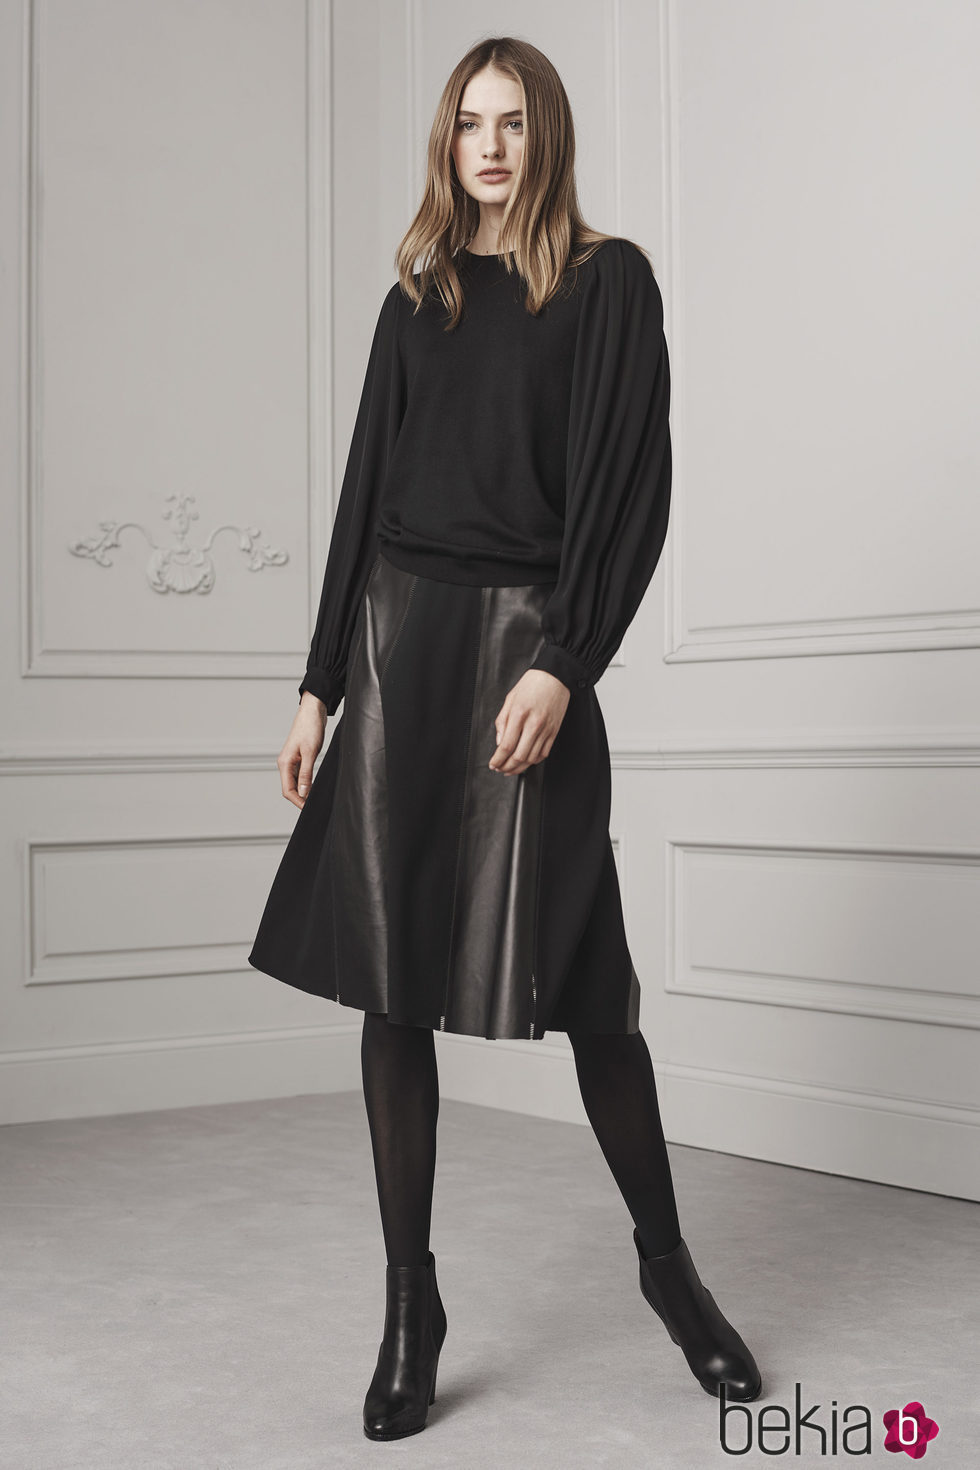 Blusa ancha y falda midi en cuero negro de Ralph Lauren para la colección Pre-Fall 2016